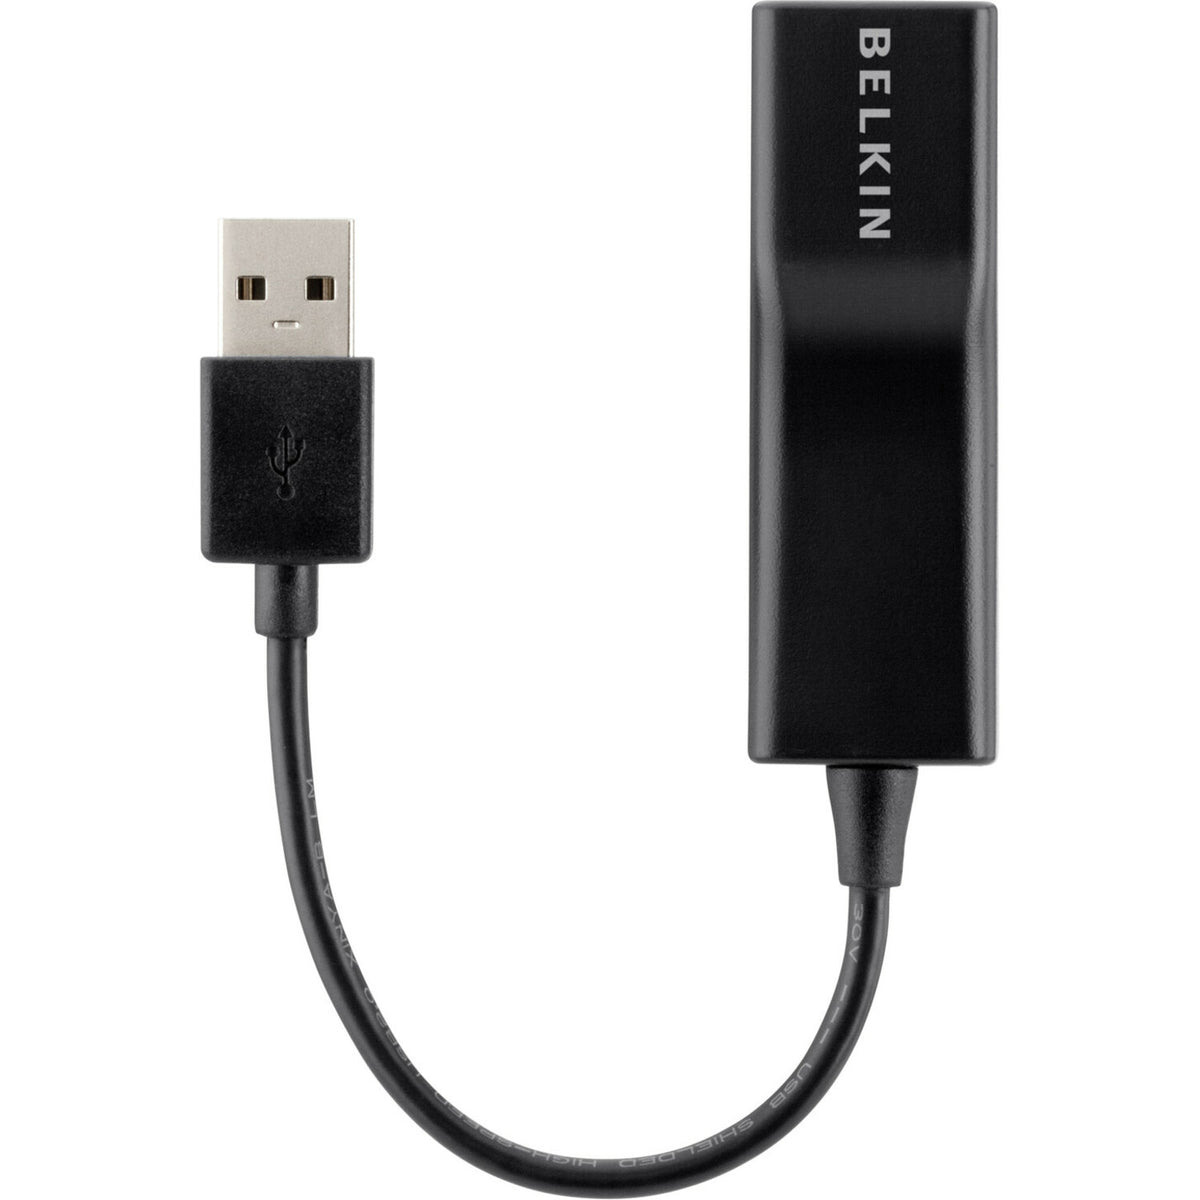 Belkin USB 2.0 Ethernet Adapter - F4U047BT